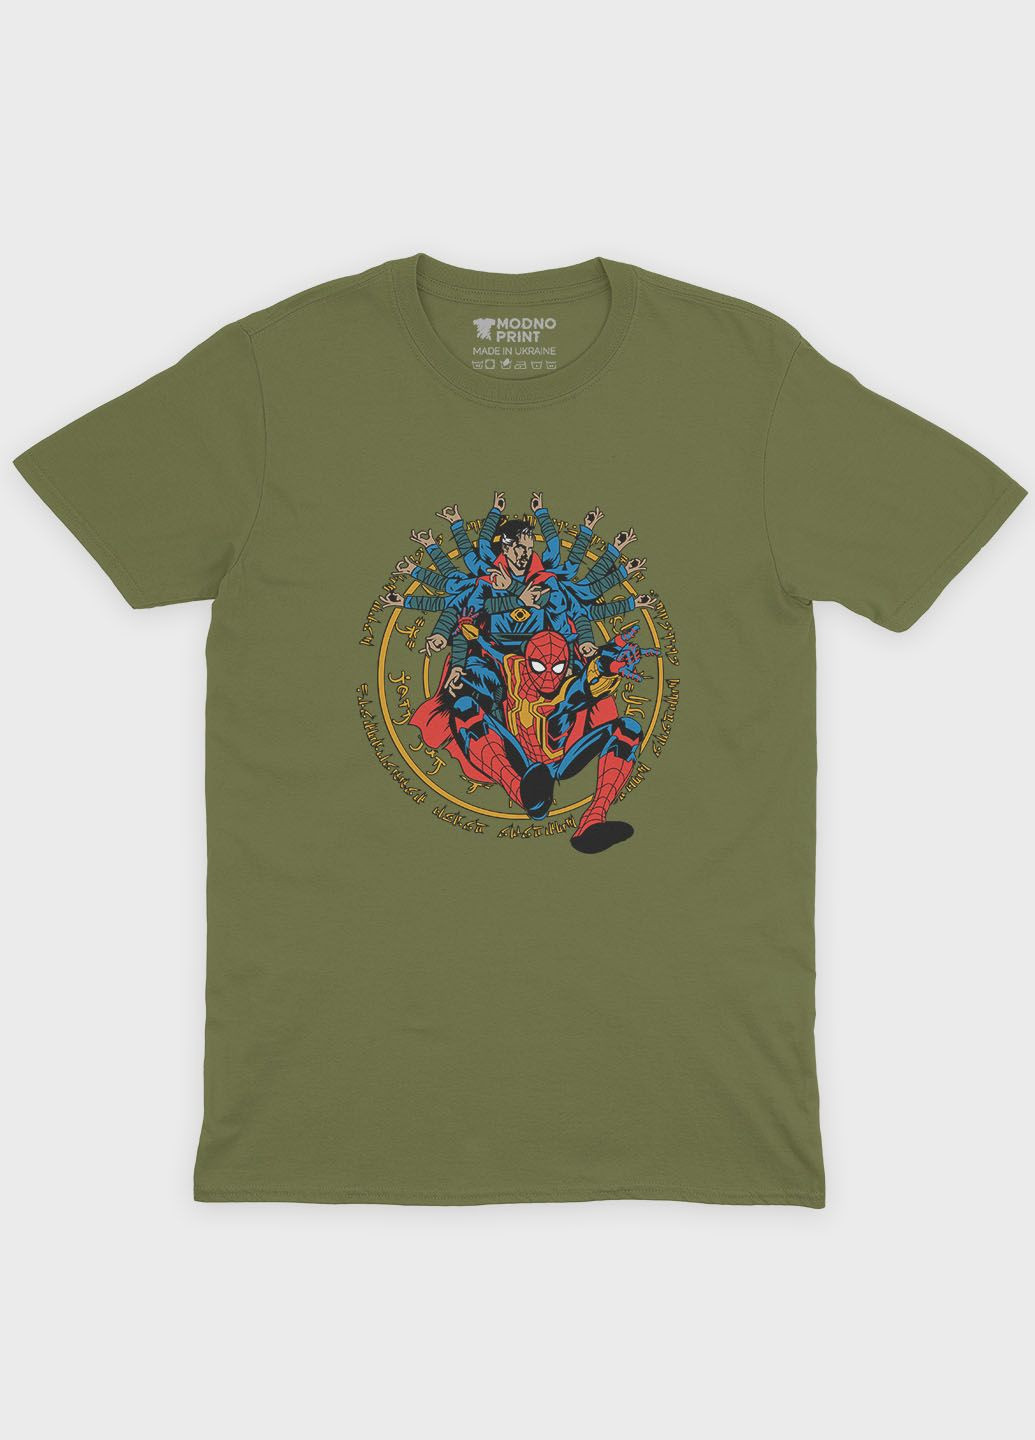 Хаки (оливковая) мужская футболка с принтом супергероя - человек-паук (ts001-1-hgr-006-014-010) Modno